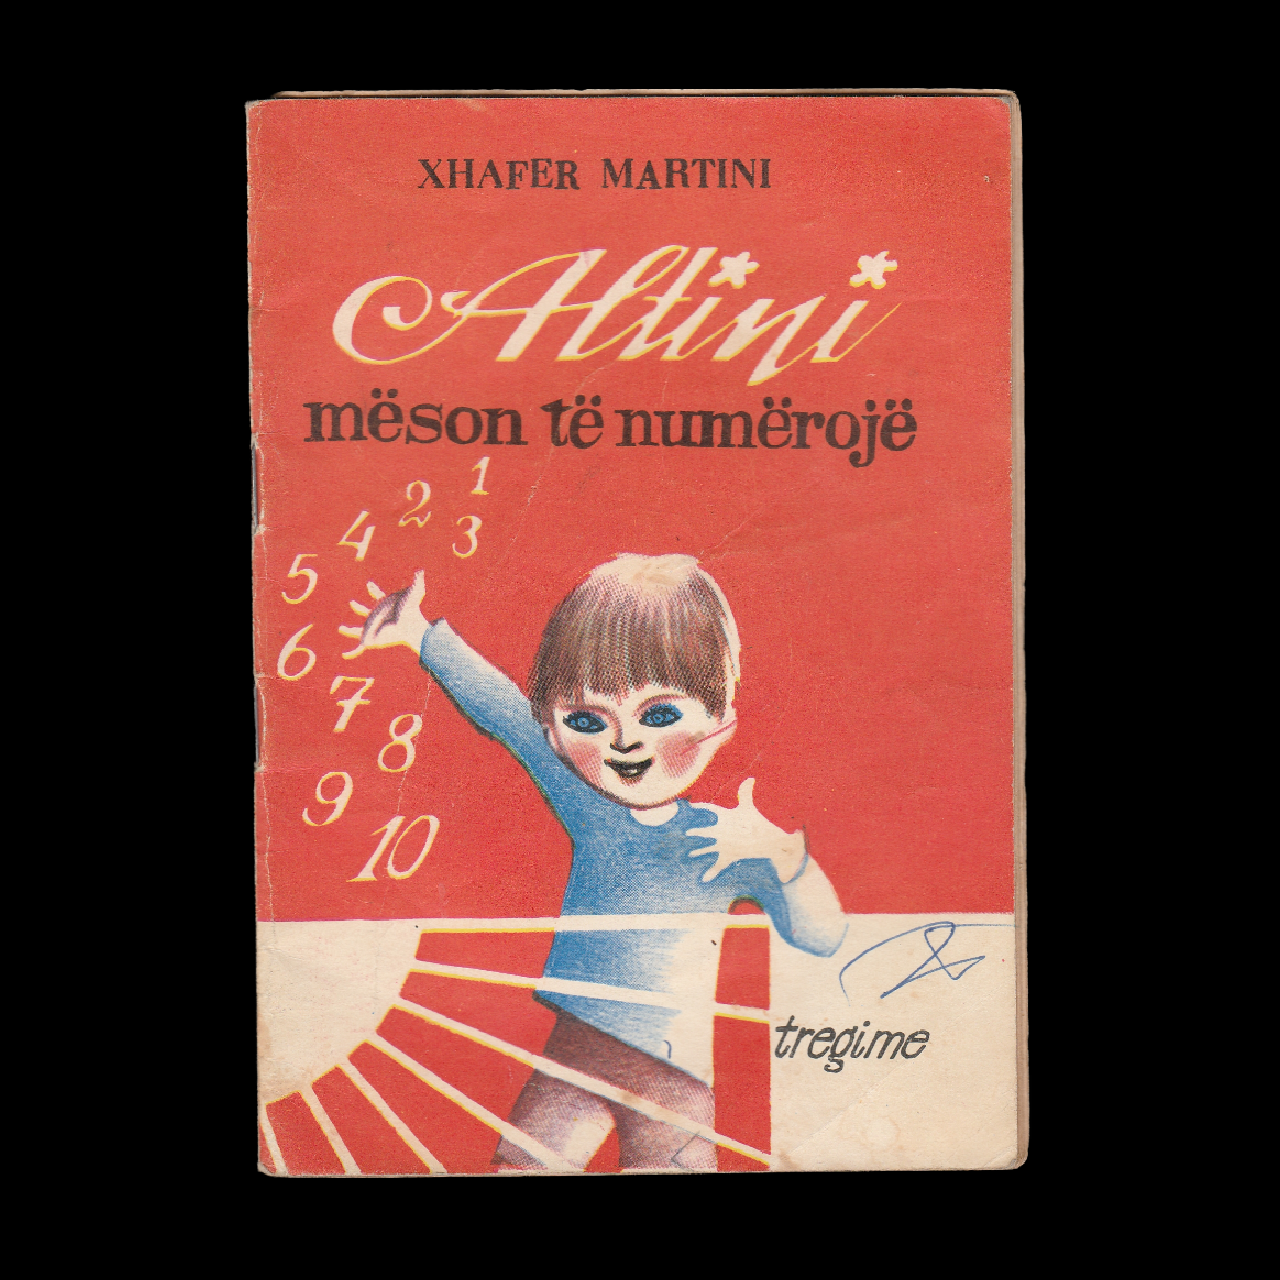 Libër i vjetër shqiptare për fëmijë ”Altini mëson të numërojë” Xhaferr Martini, Tiranë 1977 – 00629